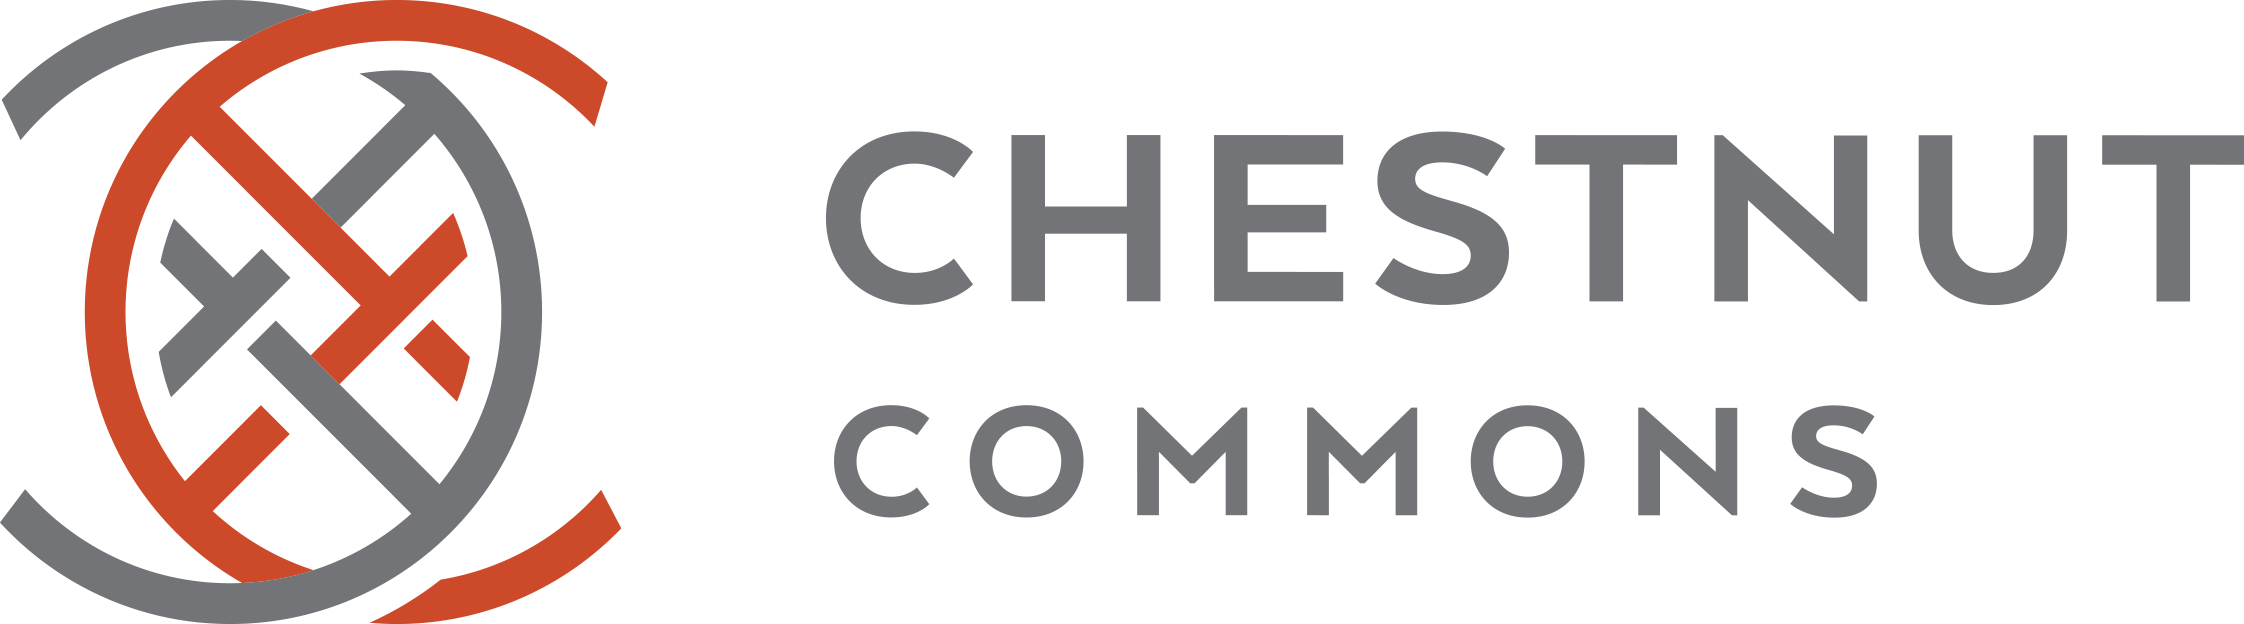 Chestnut Commons logo